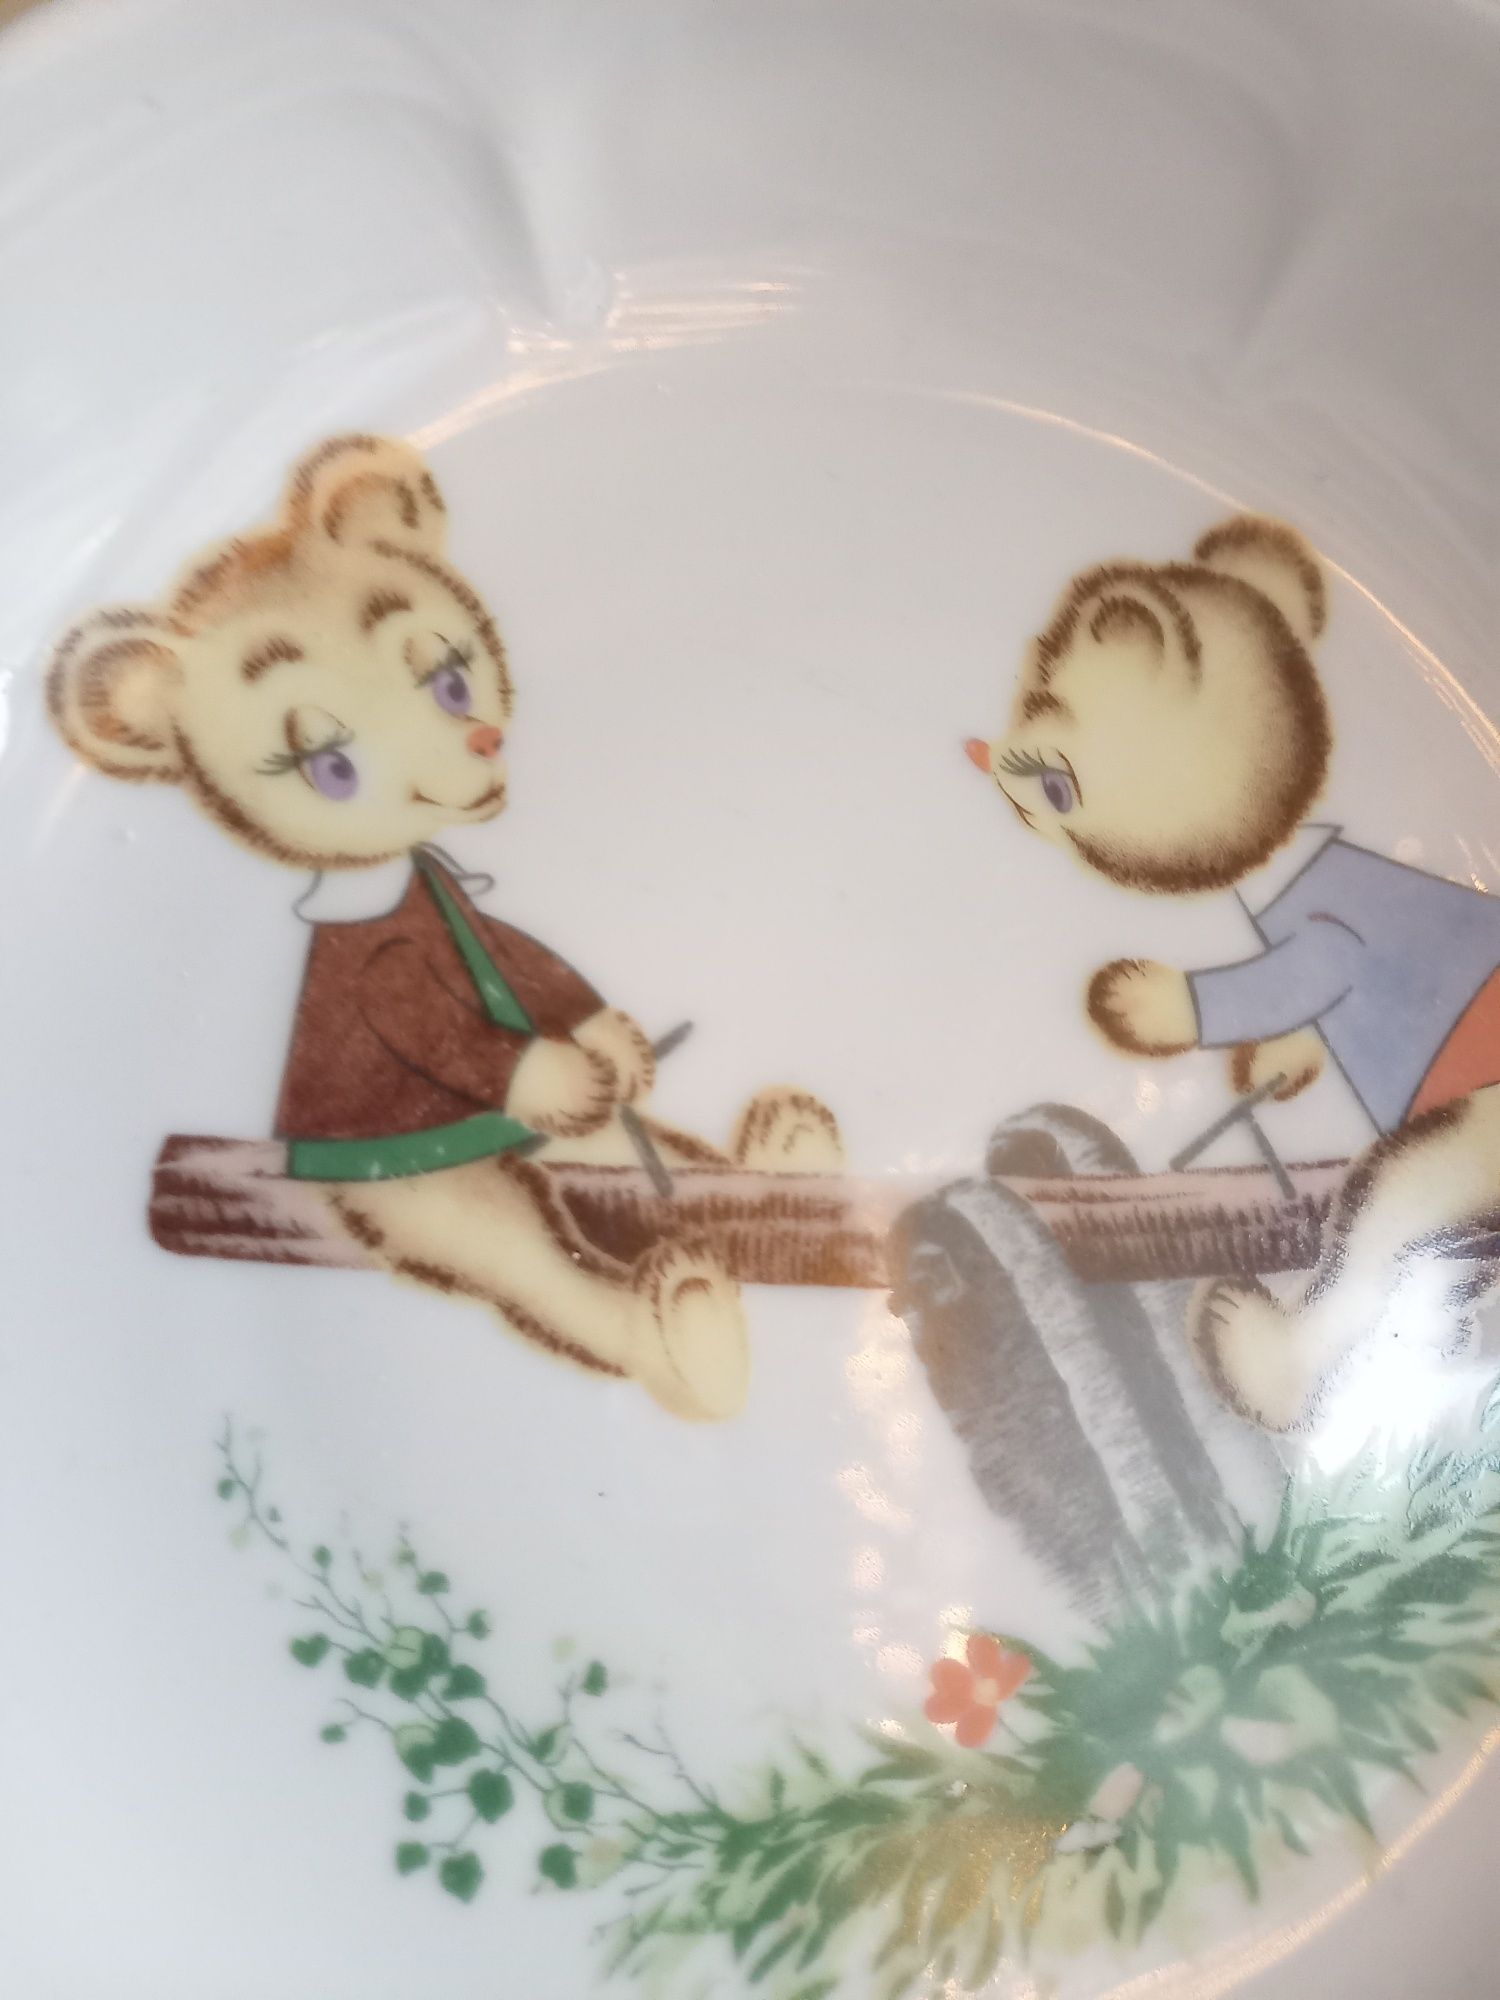 Kahla talerzyk talerz dzieciecy misie niedźwiadki na huśtawce stary